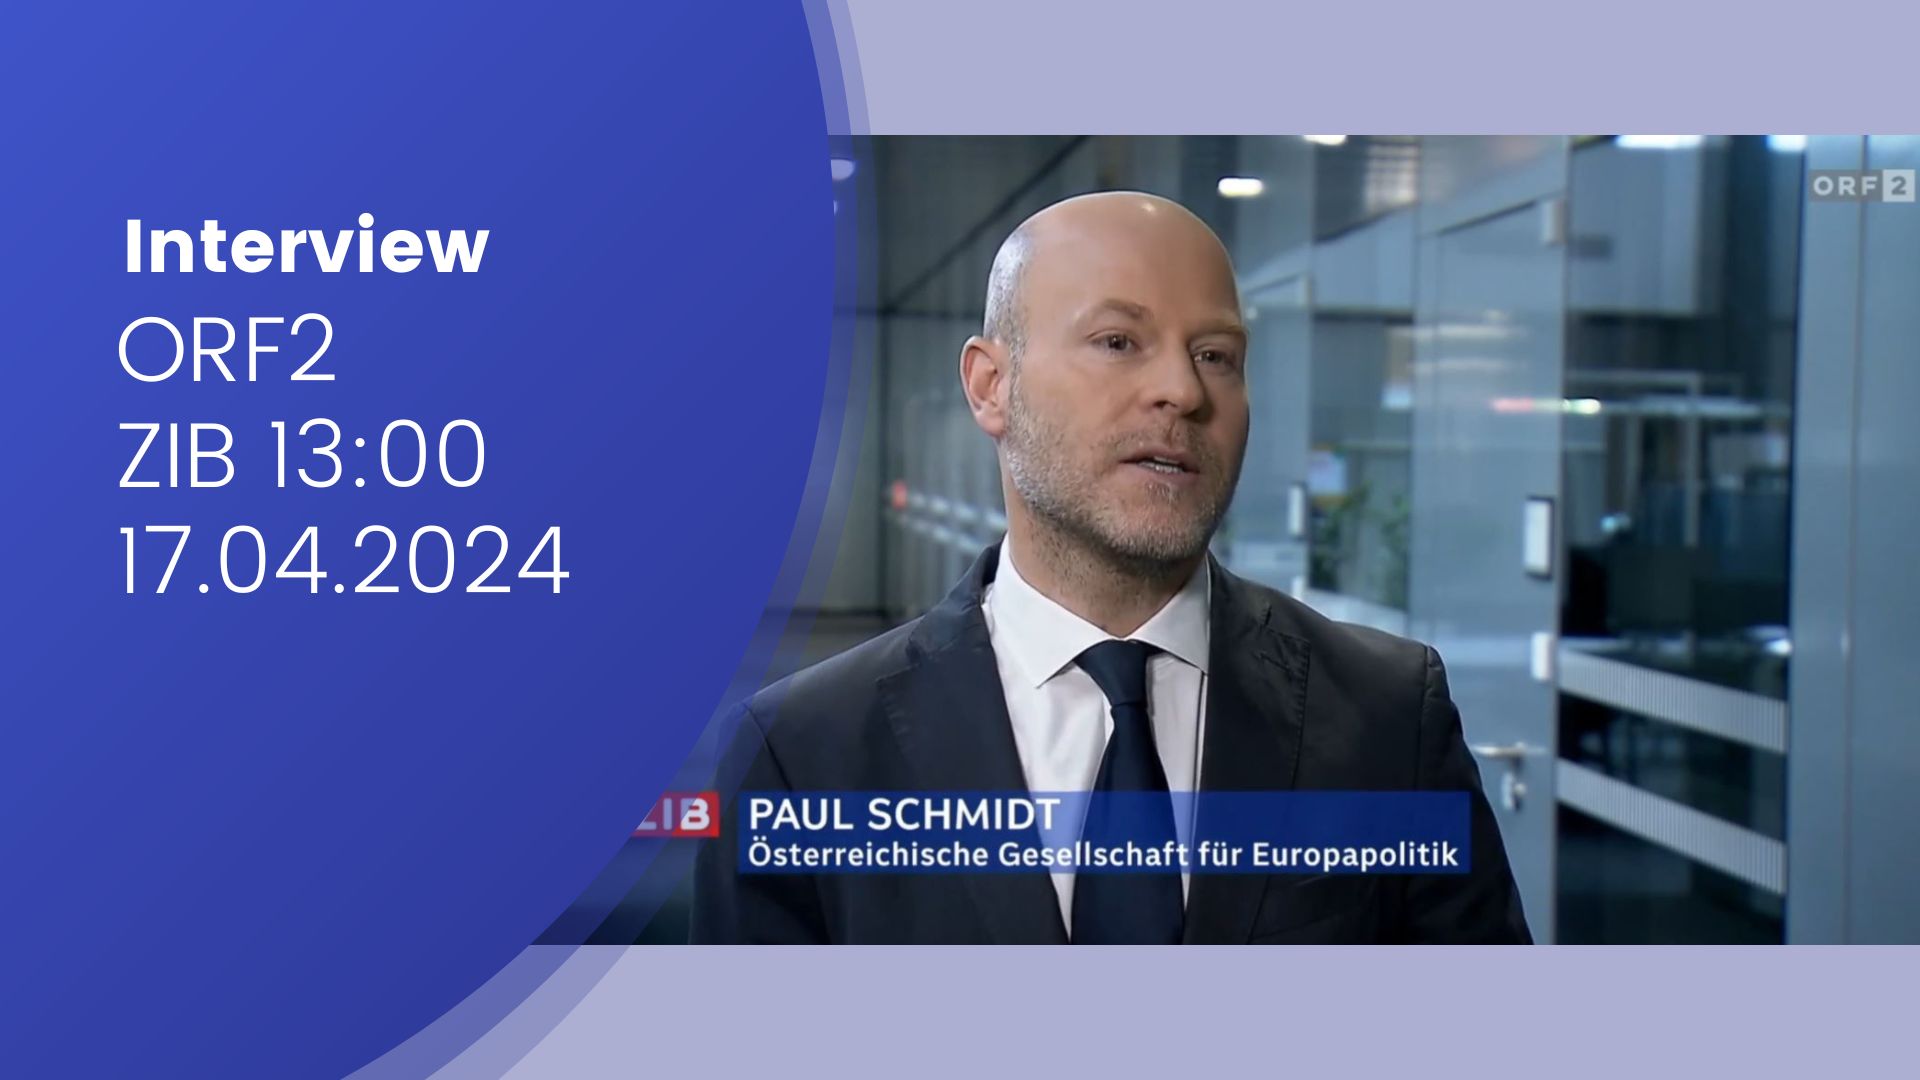 Paul Schmidt im ZIB13 Interview/ORF2 zum Thema "Interesse an EU-Wahl deutlich gestiegen"